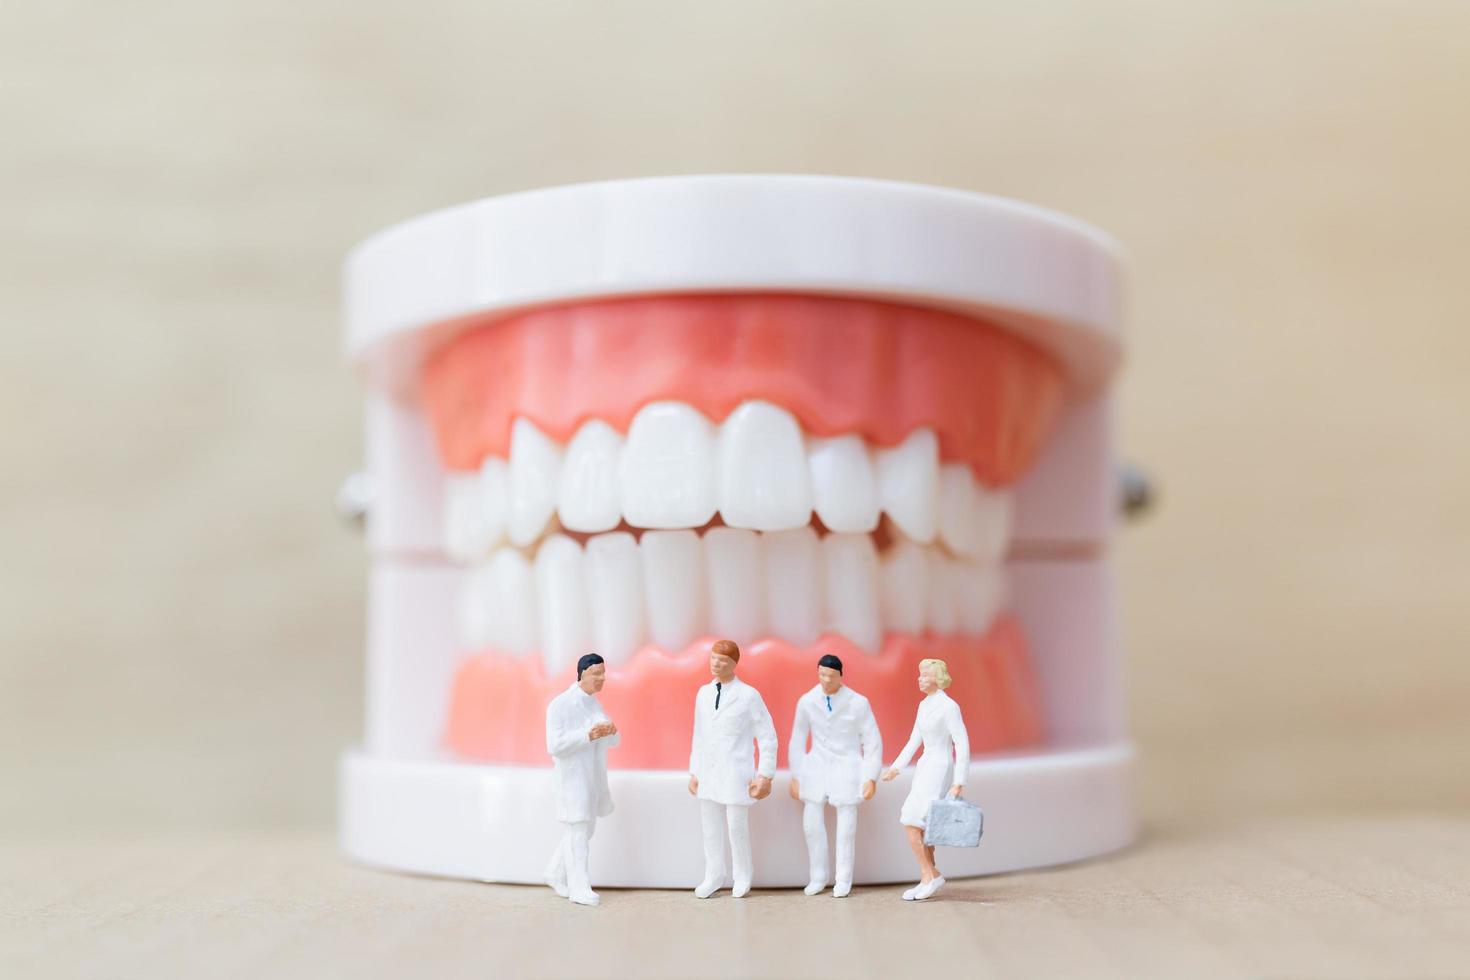 miniatuur tandartsen en verpleegsters observeren en bespreken over menselijke tanden met tandvlees en glazuurmodel op een houten achtergrond foto